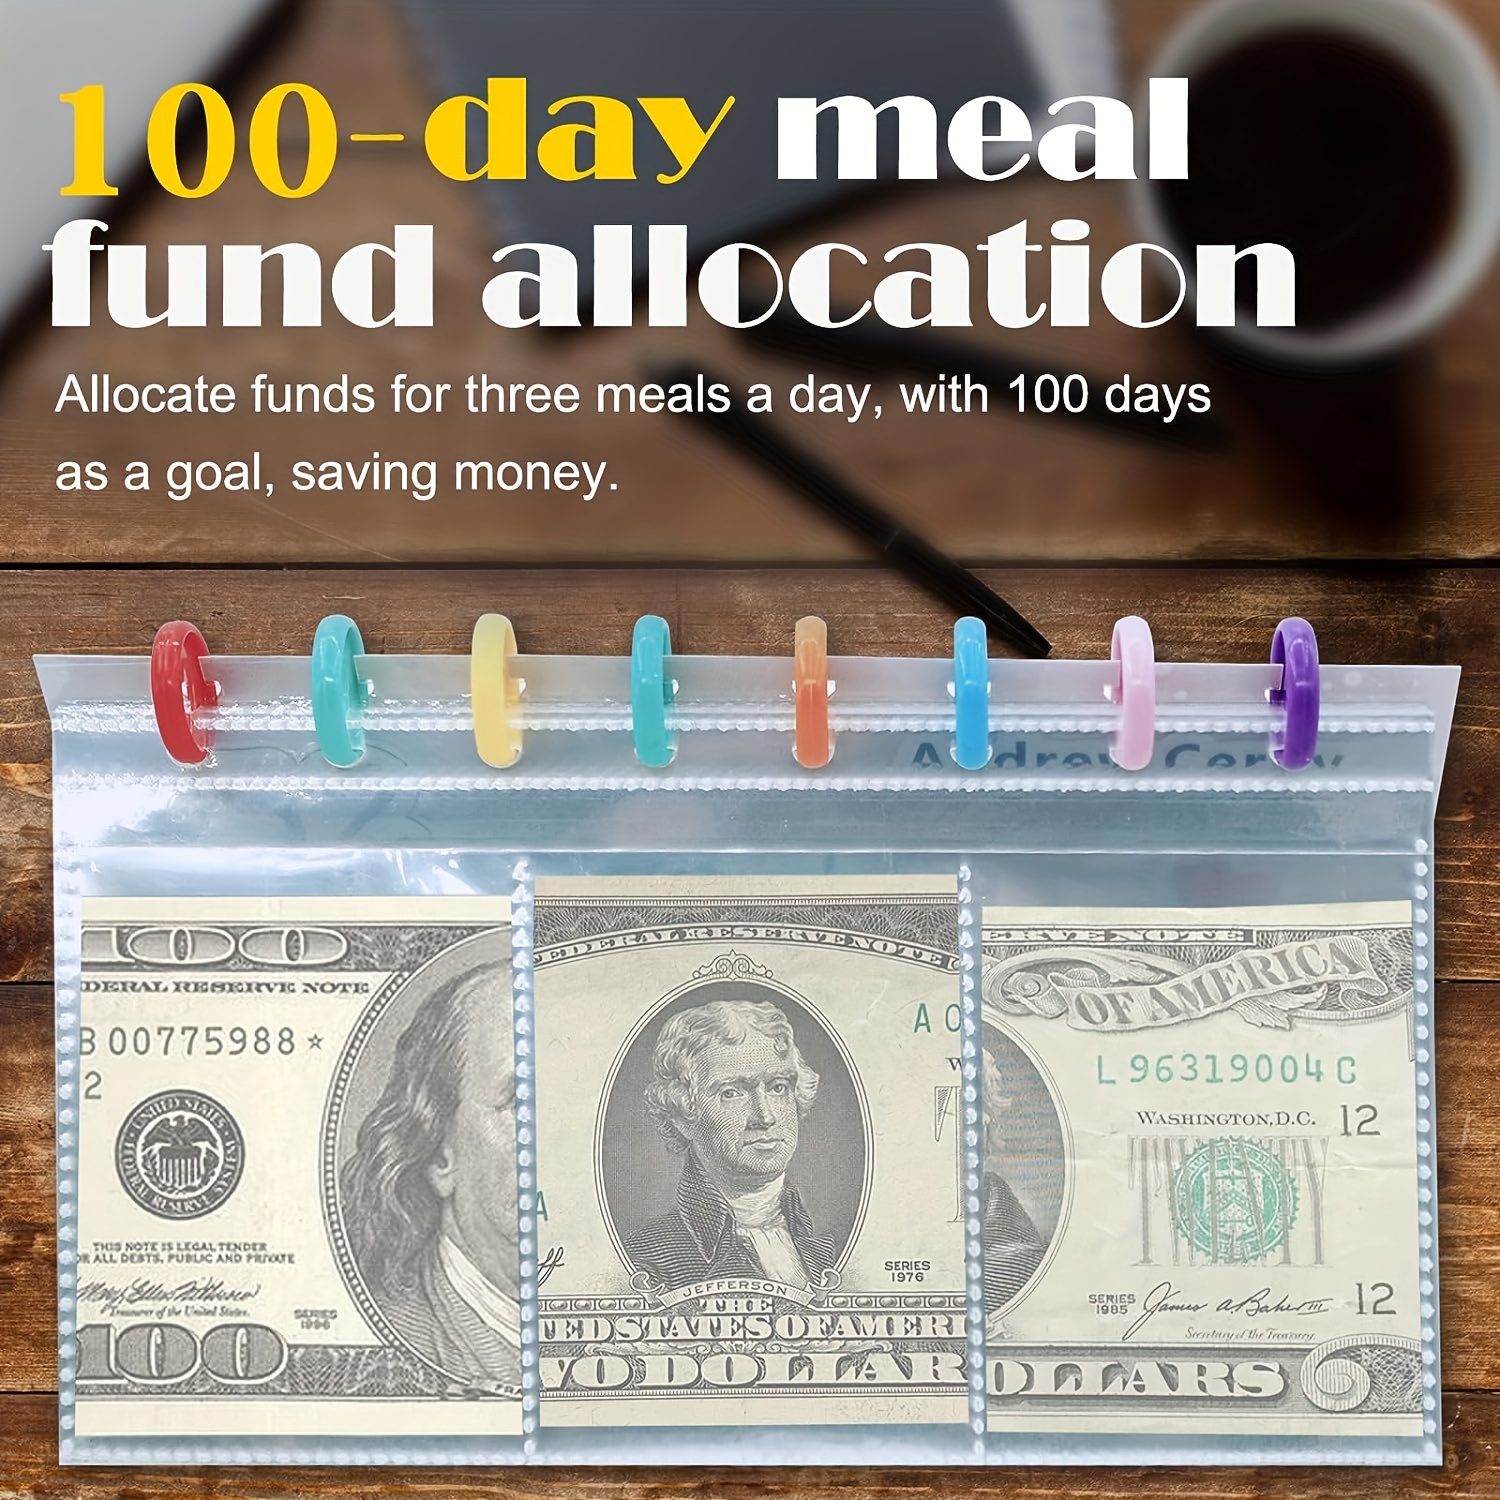 Comprar Carpeta de ahorros l Desafío de ahorro de 52 semanas Sobres en  efectivo Organizador para ahorrar dinero